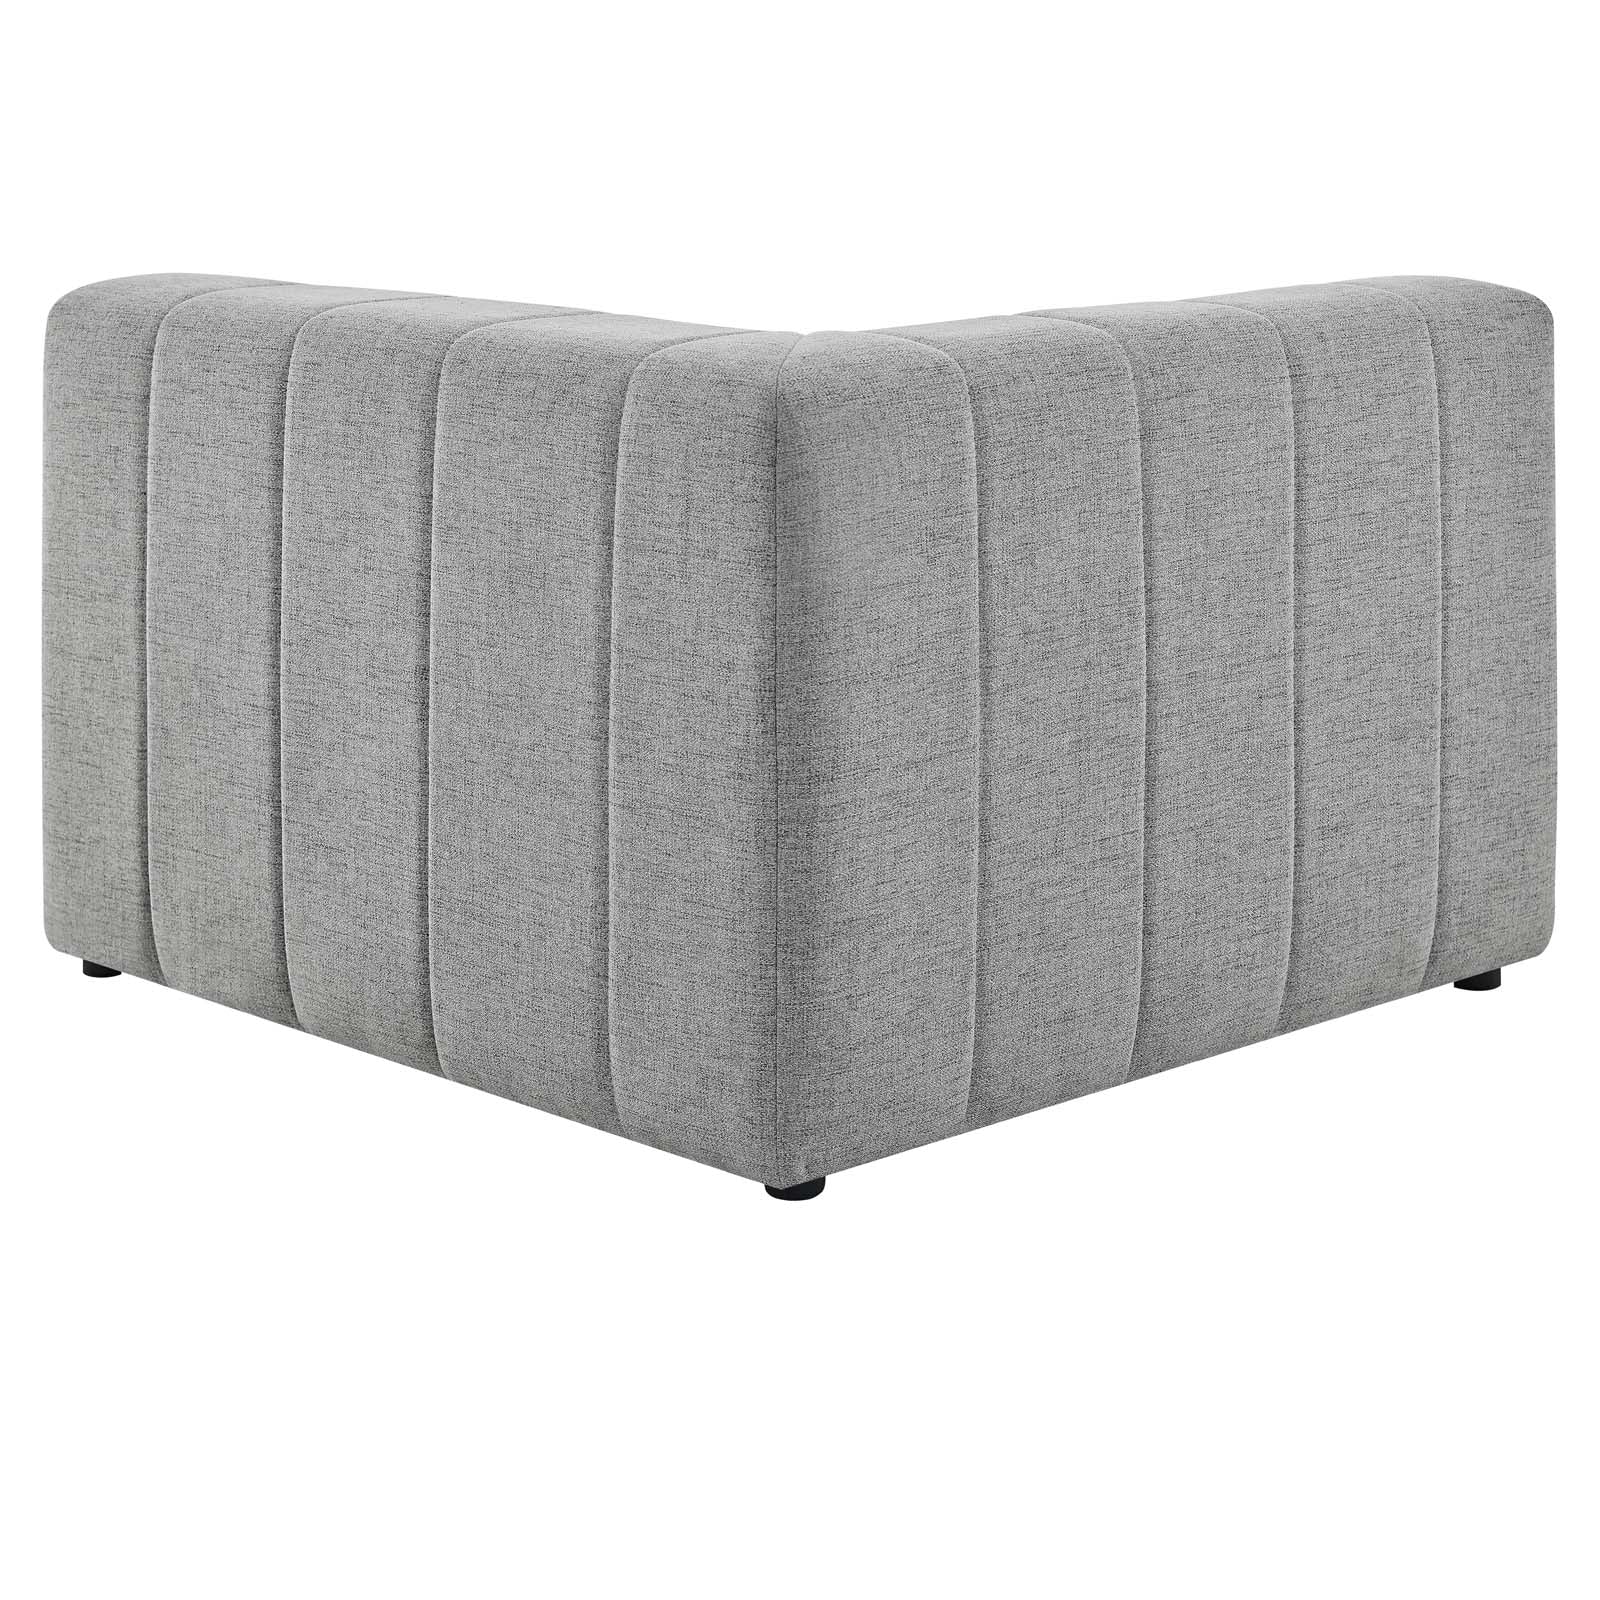 Bartlett Upholstered Fabric Left-Arm Chair - East Shore Modern Home Furnishings